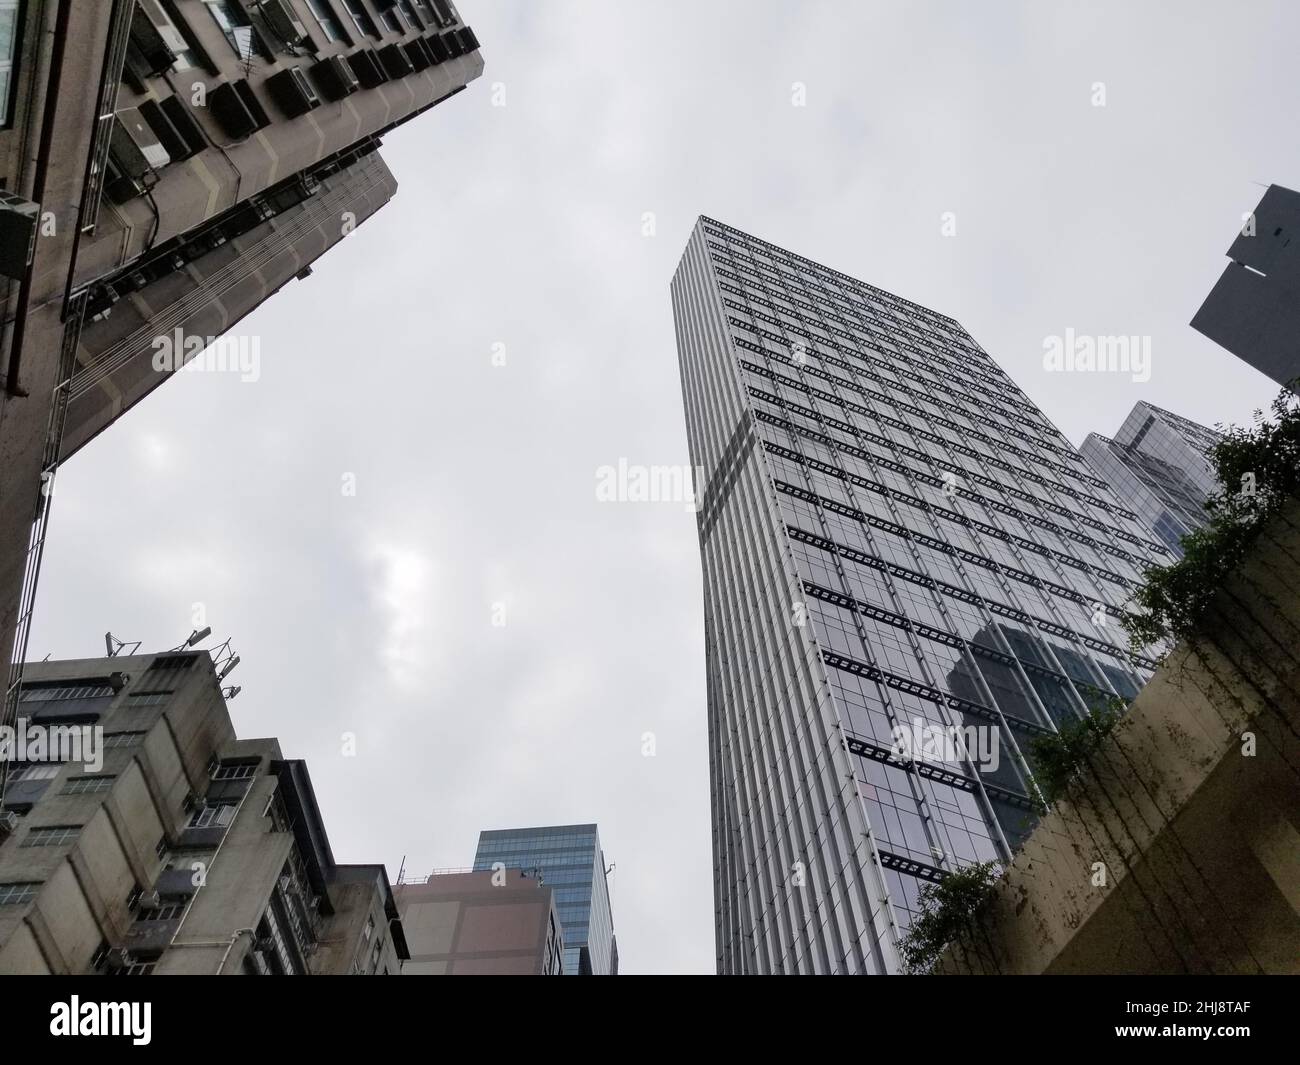 Wolkenkratzer aus Stein, Ziegel, Glas und Metall in Hongkong - Wohn- und Geschäftshäuser an einem bewölkten Tag -15 Stockfoto